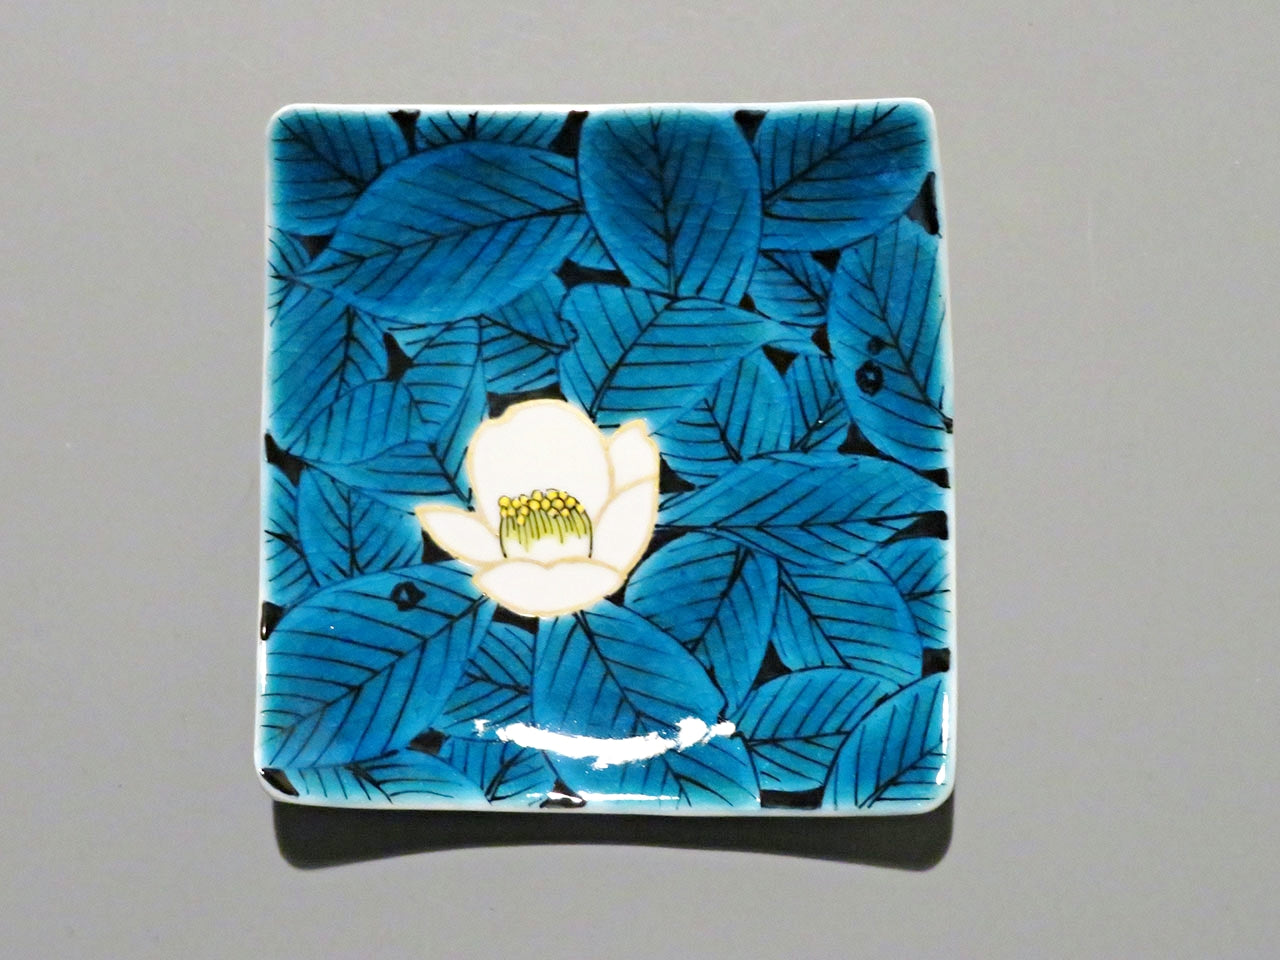 餐具 碟子套装 蓝釉花纹方形小碟 手绘 5只 山口义博 九谷烧 陶瓷器